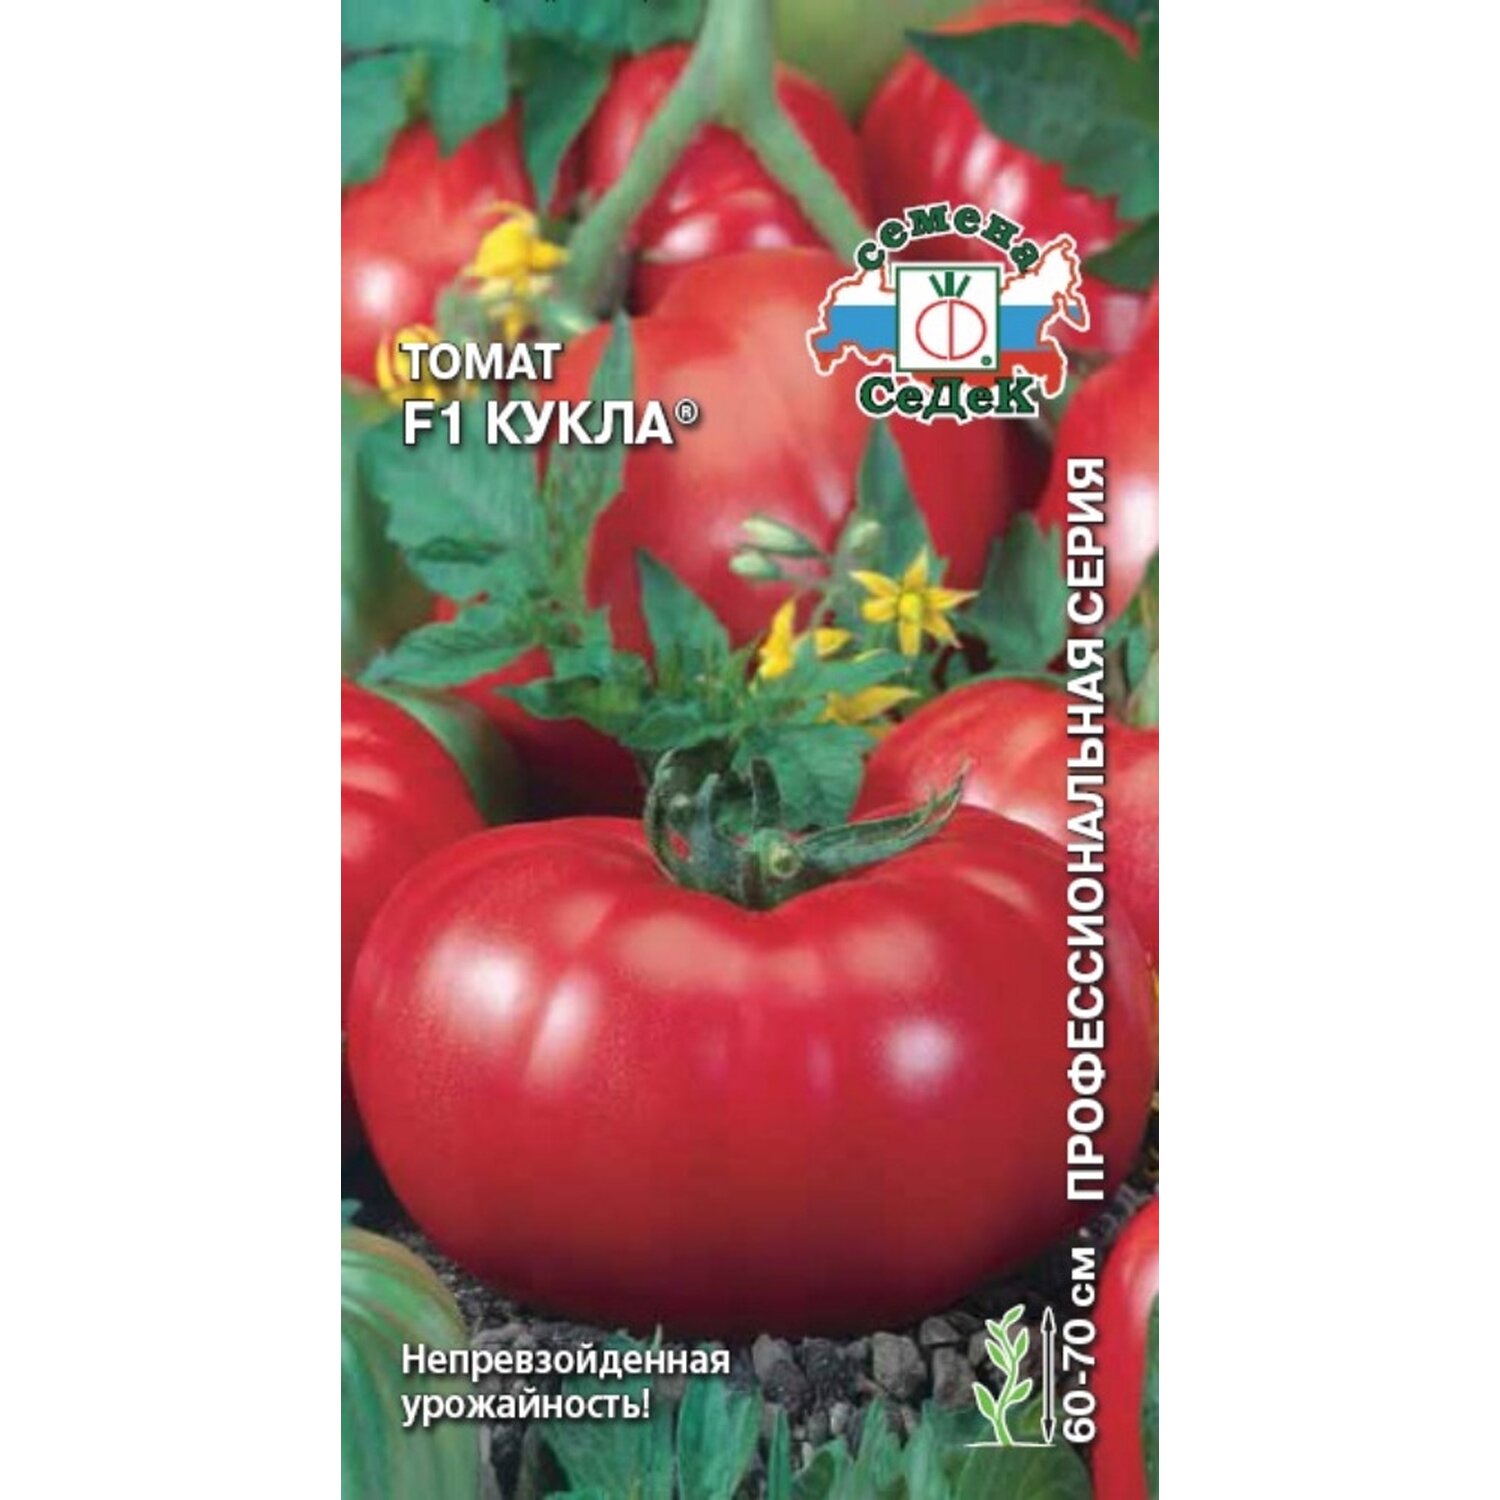 Томат "кукла" f1: описание и характеристики сорта, рекомендации по выращиванию и получению хорошего урожая помидор русский фермер